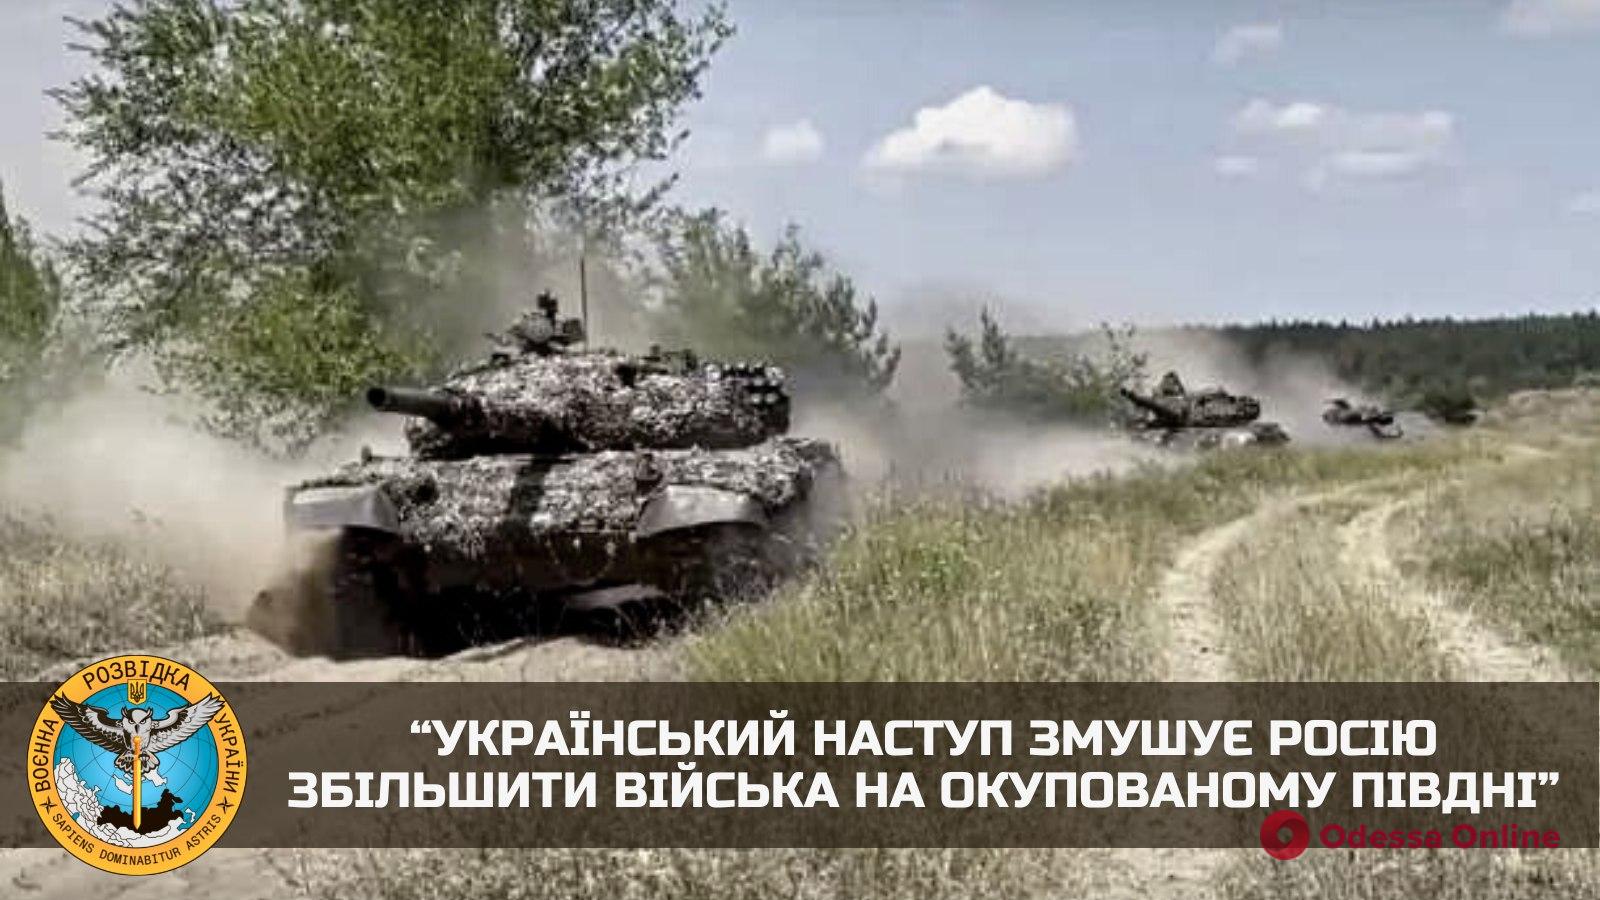 Розвідка: український наступ змушує росію збільшити війська на окупованому півдні